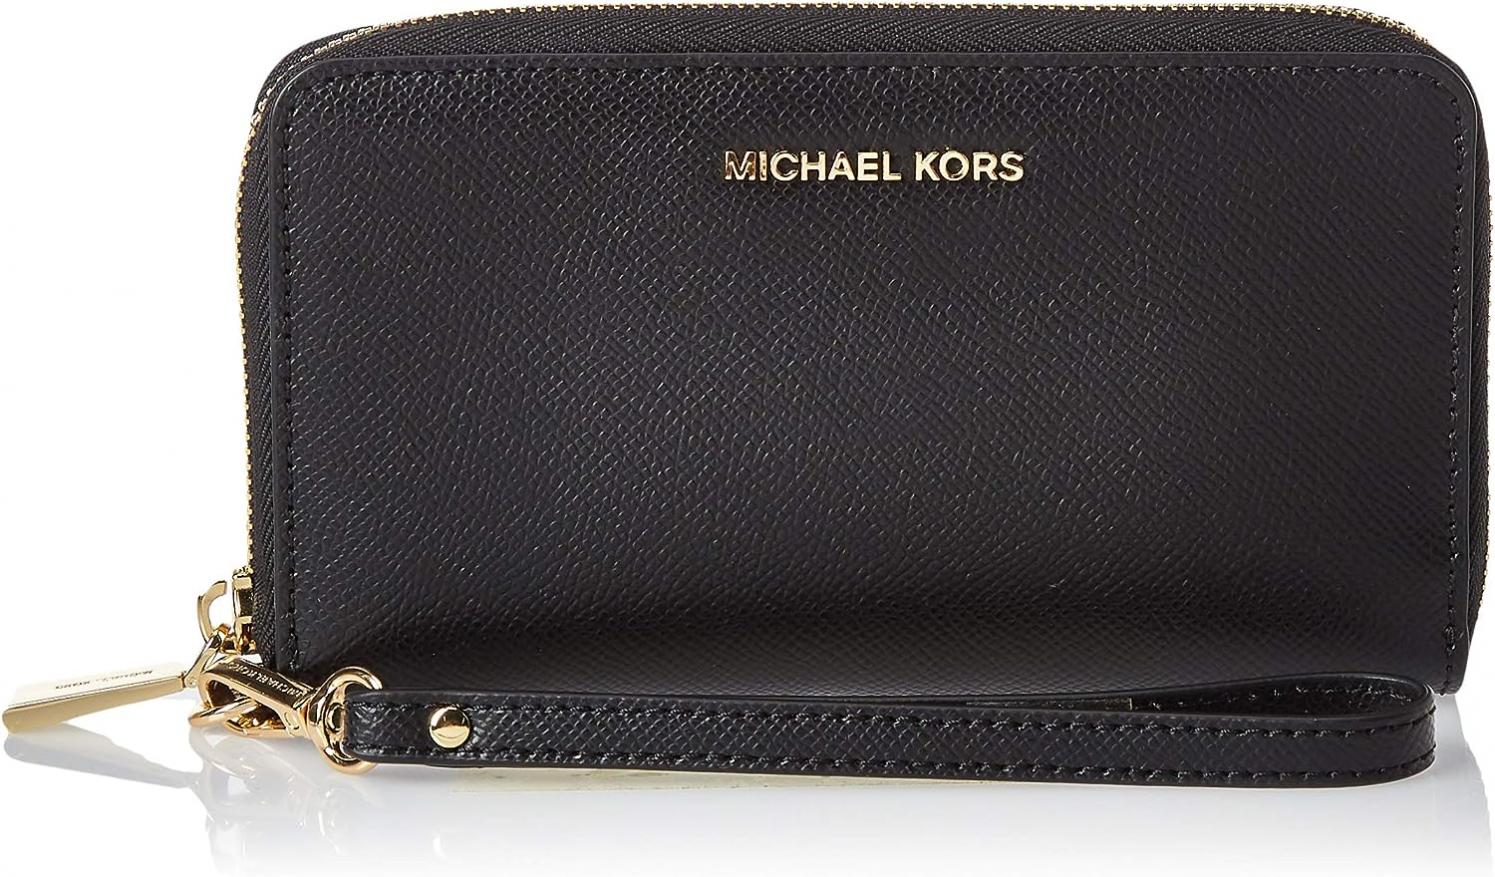 Michael Kors Women's Jet Set Wallet